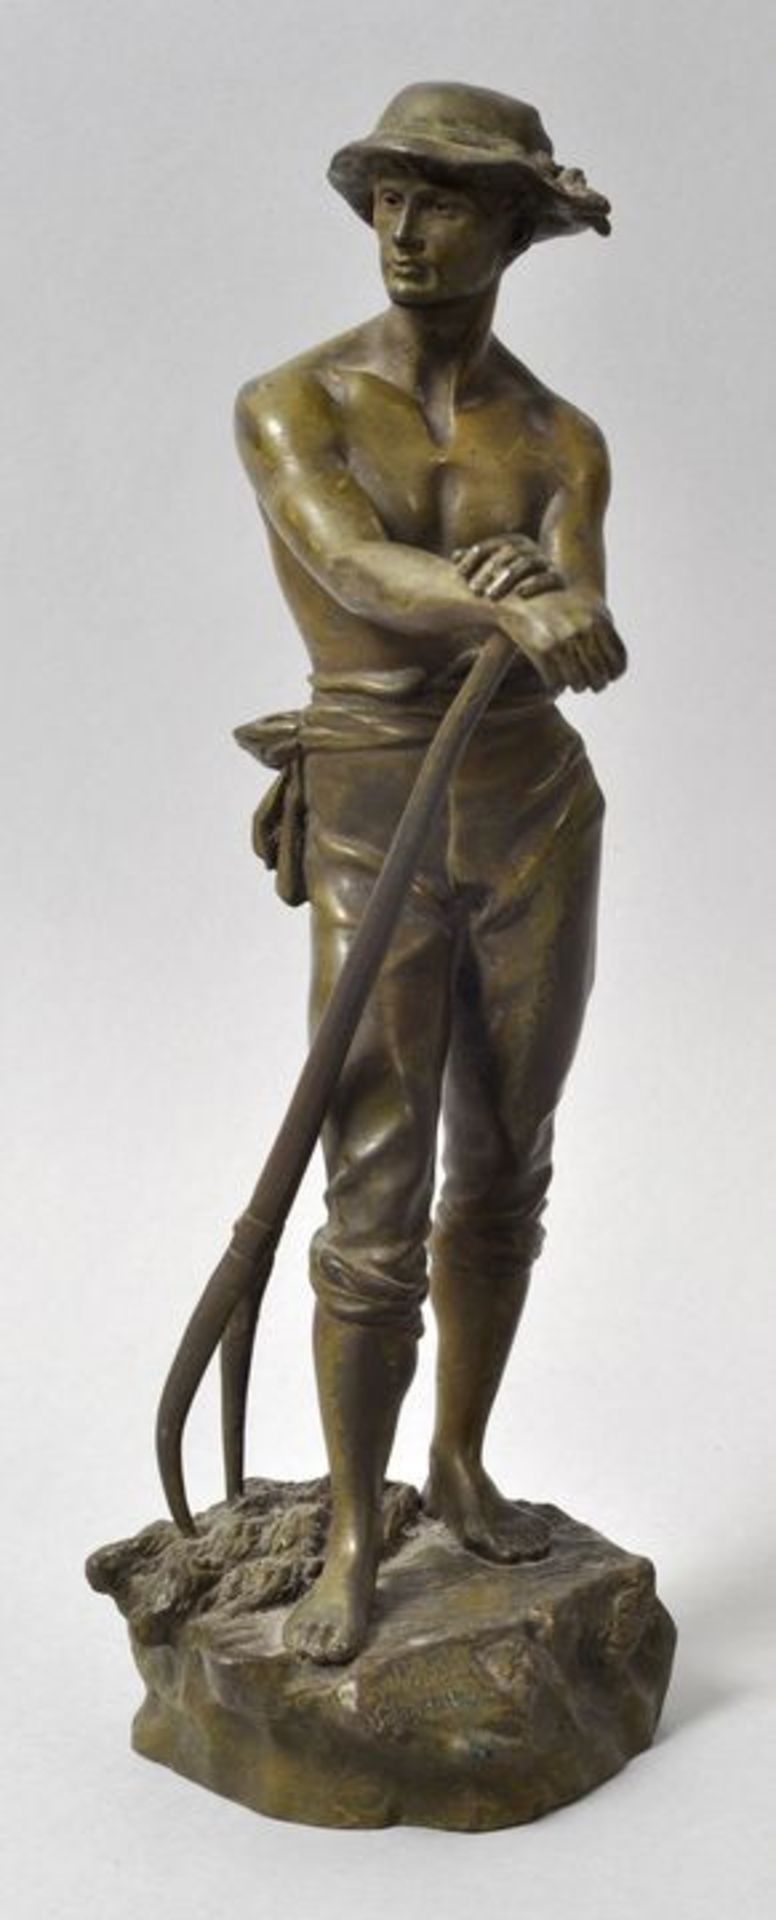 Lévy, Charles Octave. 1820-1899 Paris"Le Faneur" (Der Heuarbeiter). Um 1890. Bronze, auf dem